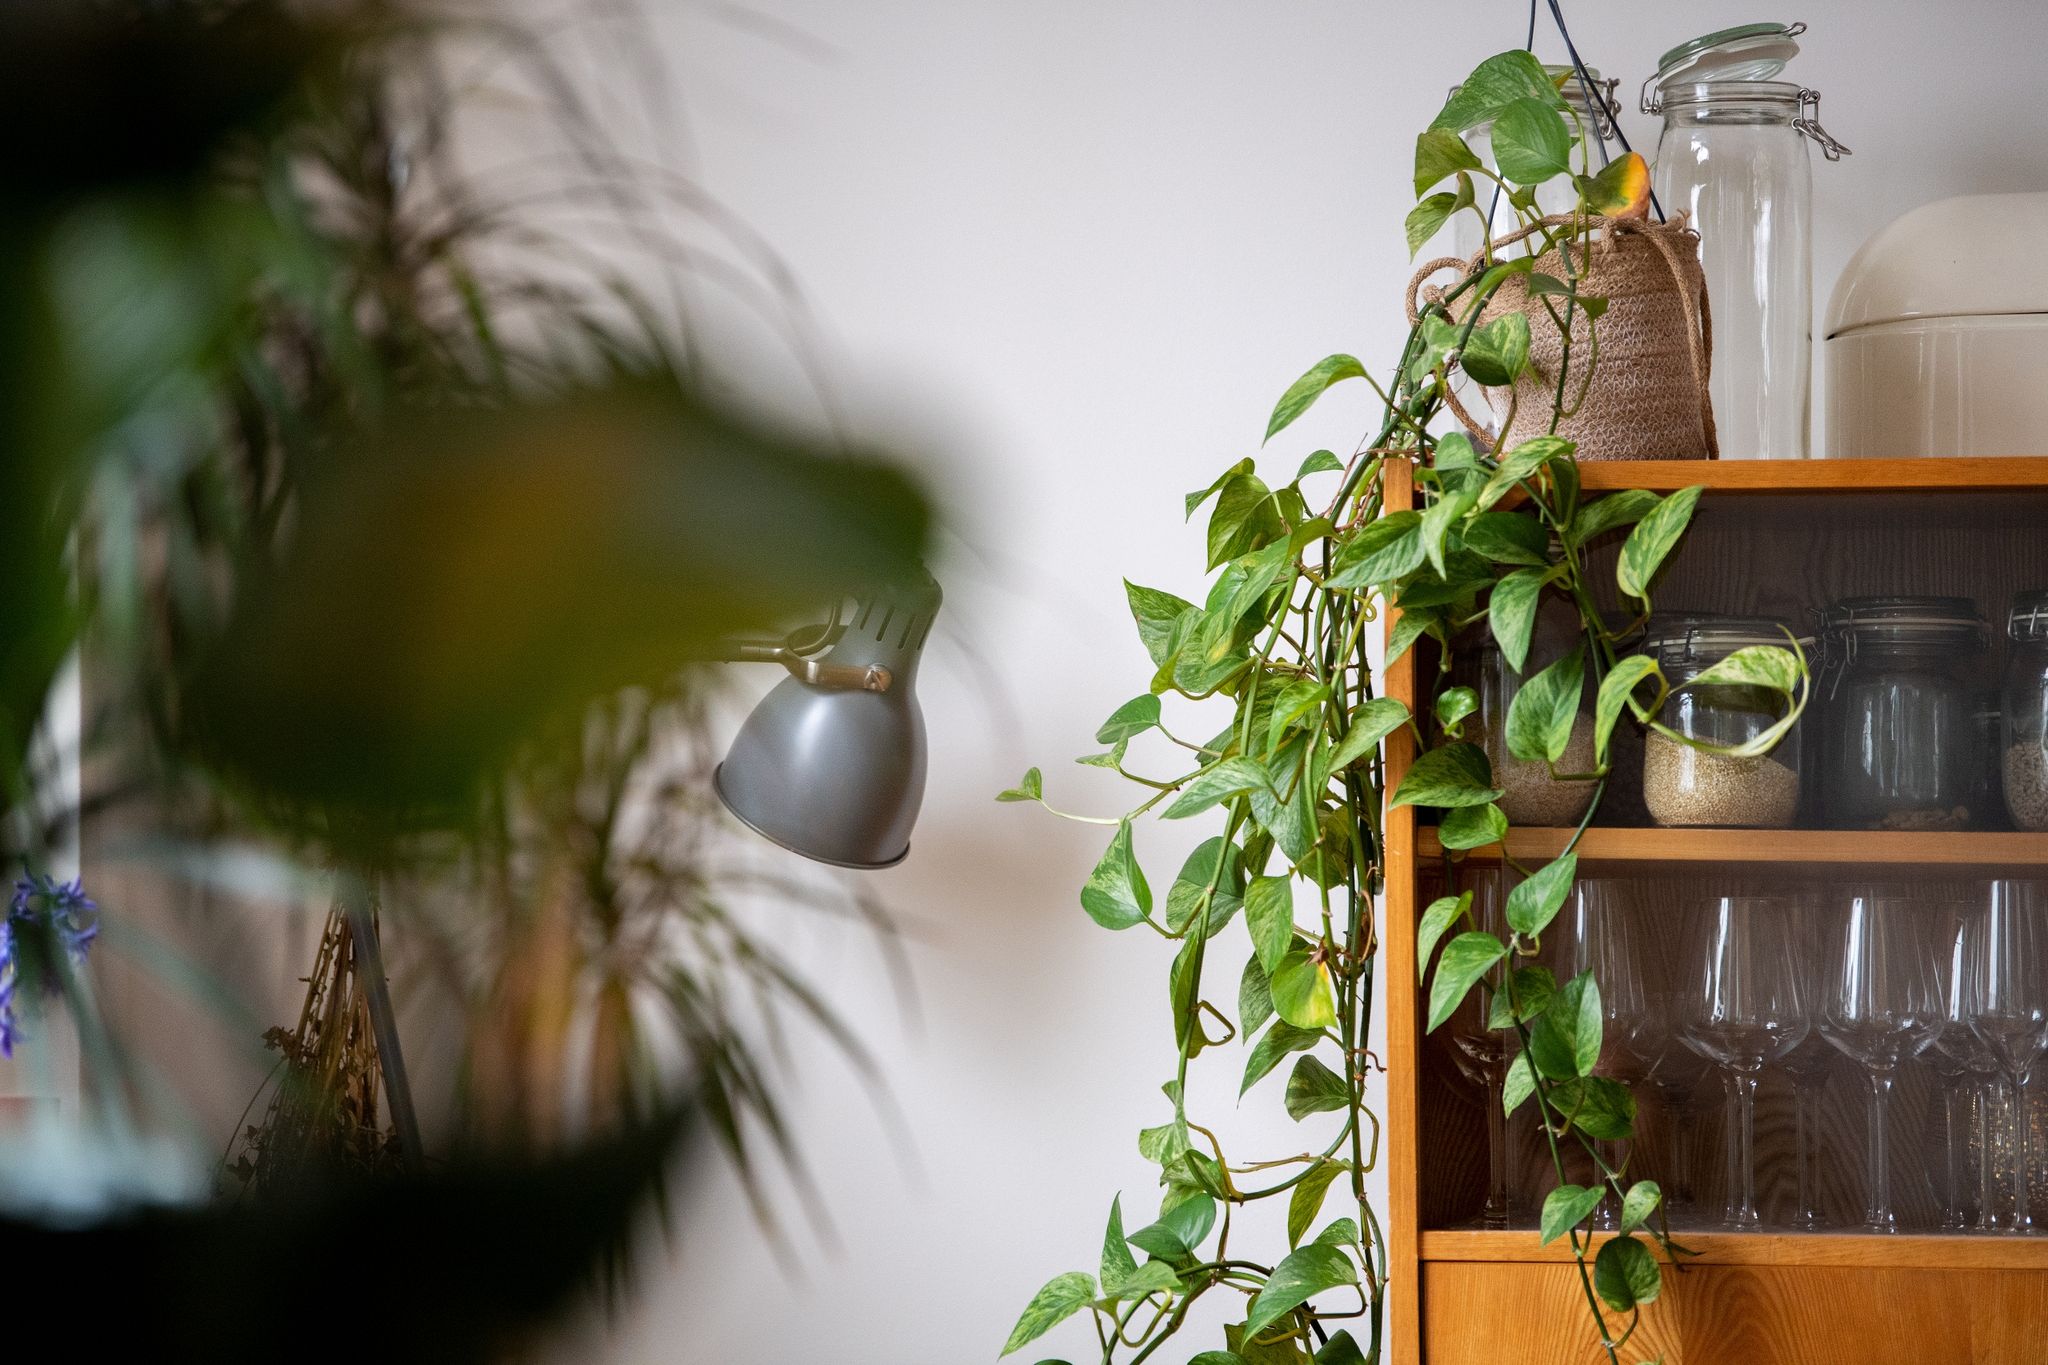 Ein Paradies für viele Schädlinge: Zimmerpflanzen bieten ihnen im Winter oft einen guten Raum zum Wachsen.